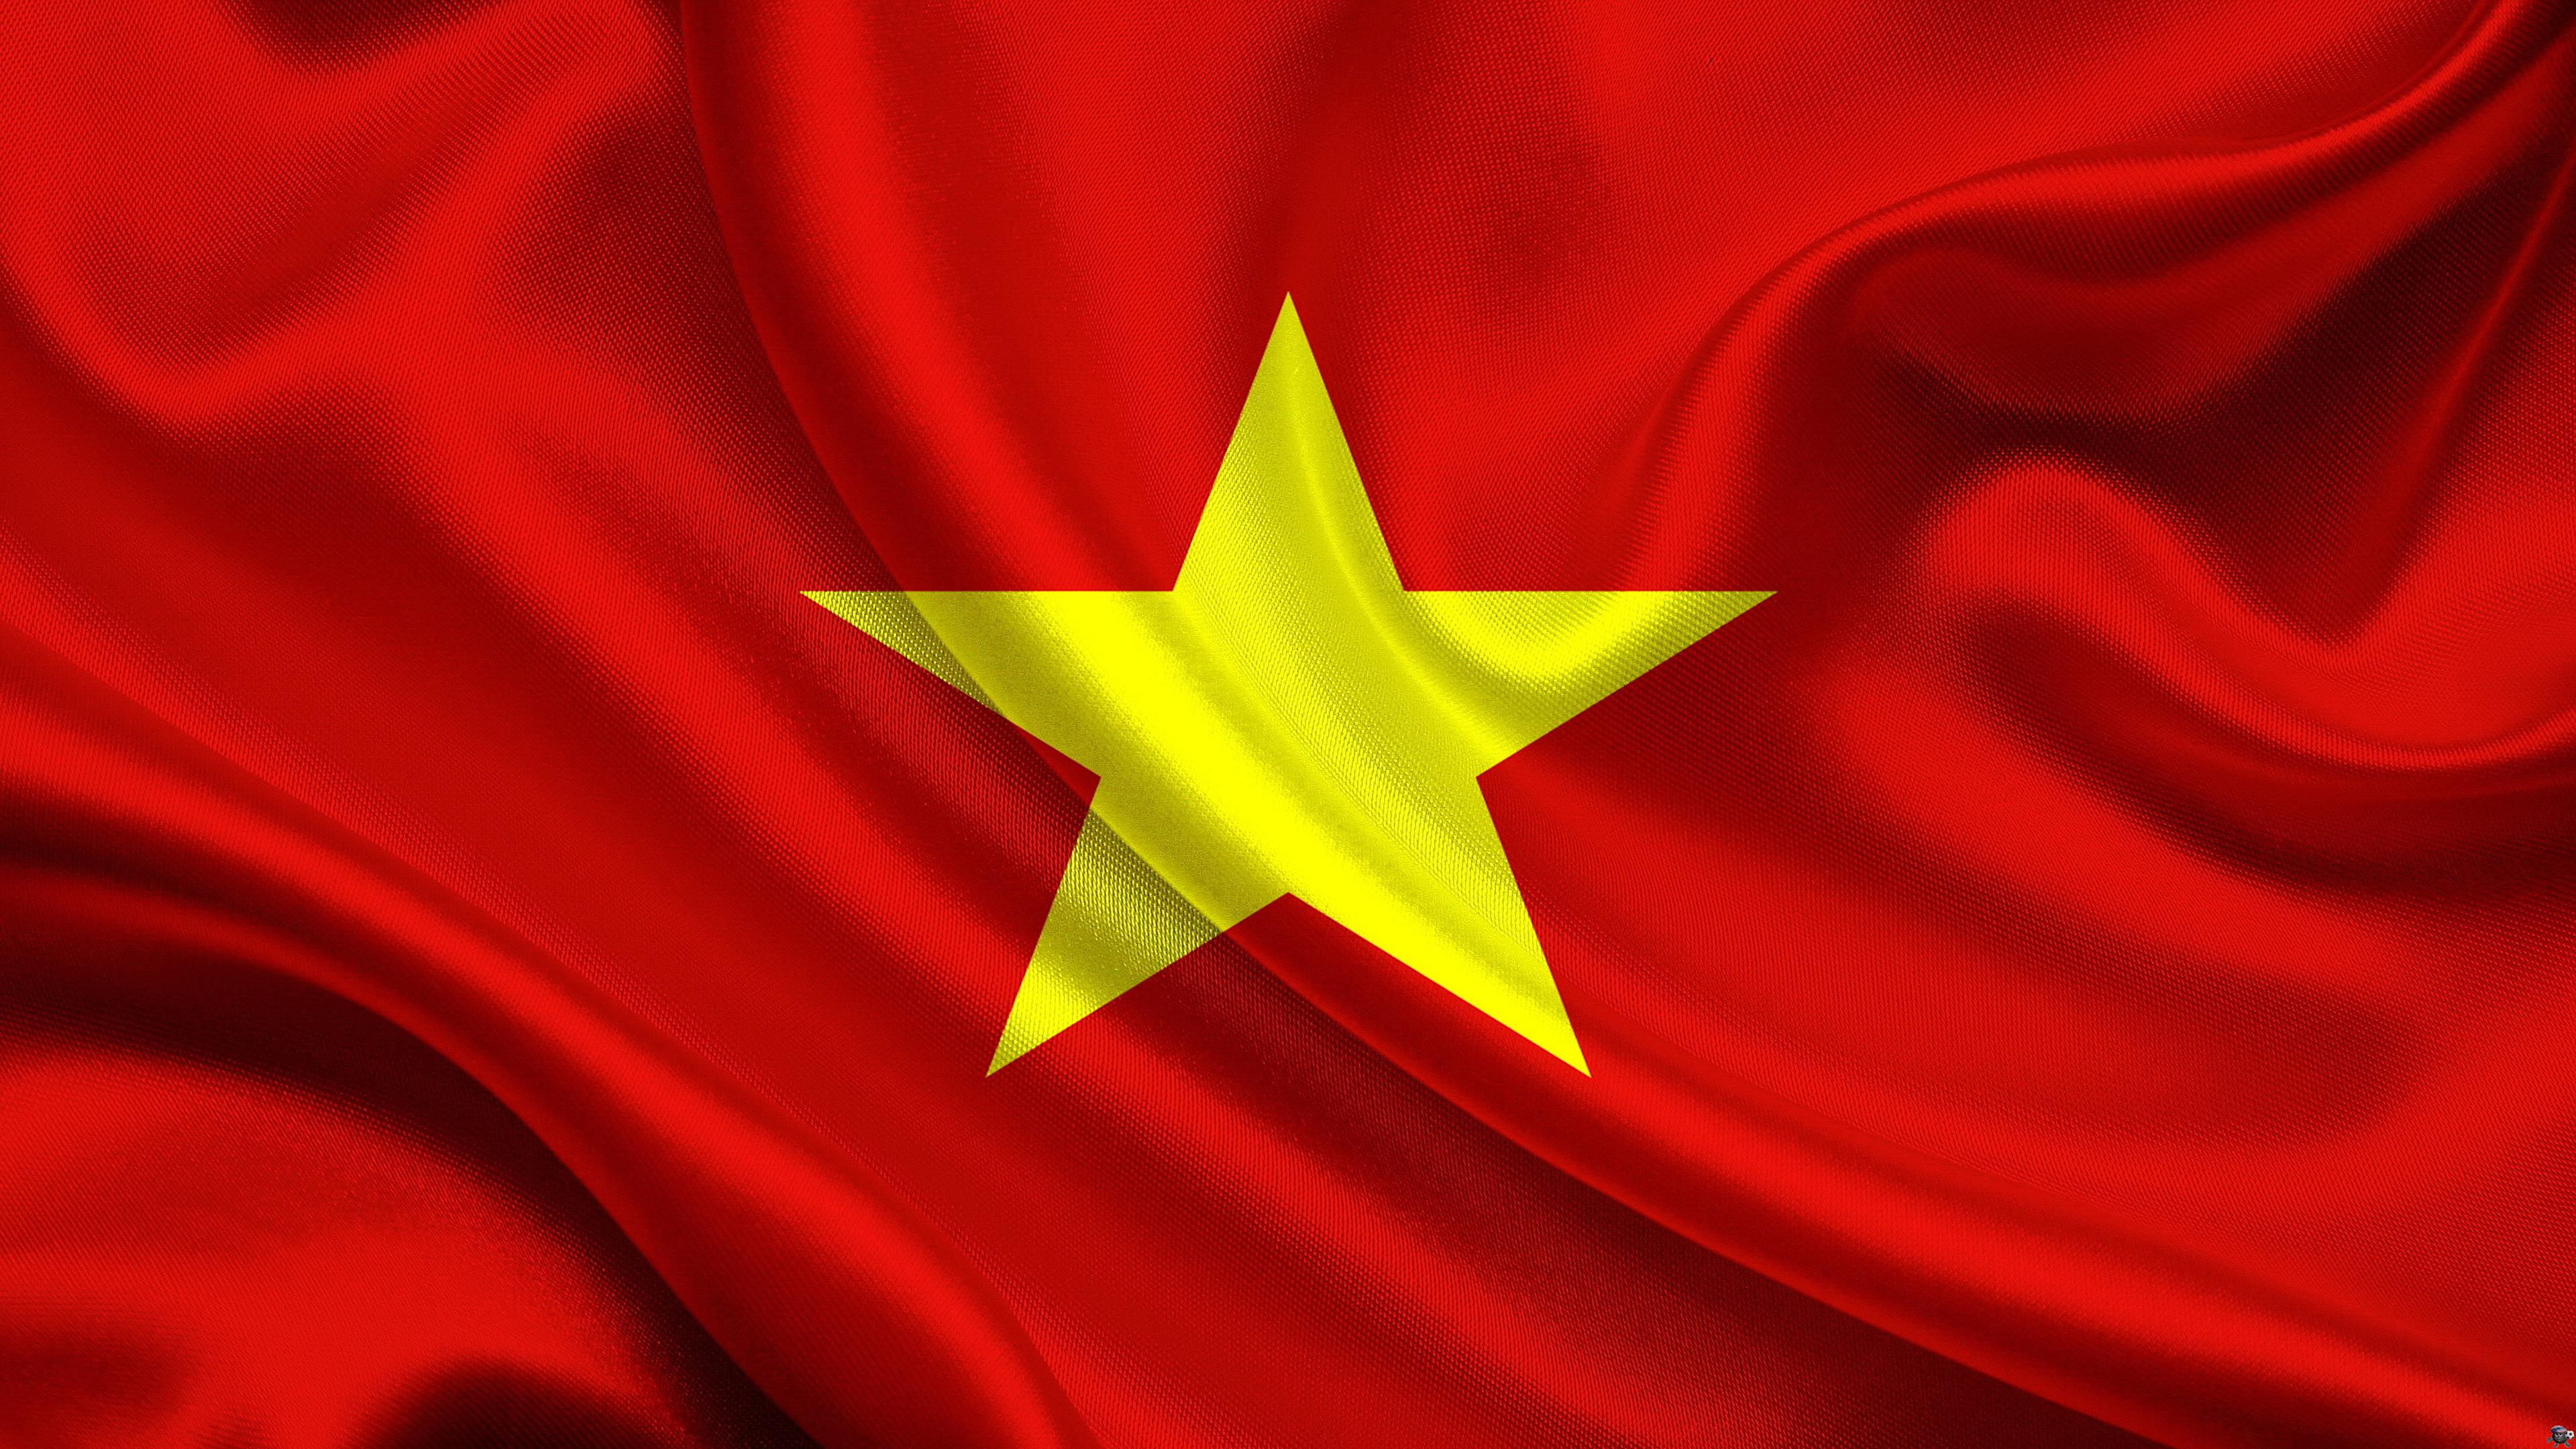 Cờ Việt Nam: Biểu tượng cờ Việt Nam là niềm tự hào của mỗi người con Việt Nam. Với sự nghiêng đầu trủ trẻ, sức mạnh bên trong, Cờ Việt Nam luôn thúc đẩy những khát khao đầy tâm hồn của người Việt. Hãy cùng trải nghiệm và cảm nhận những giai điệu của sự tự hào đó trong hình ảnh cờ Việt Nam.